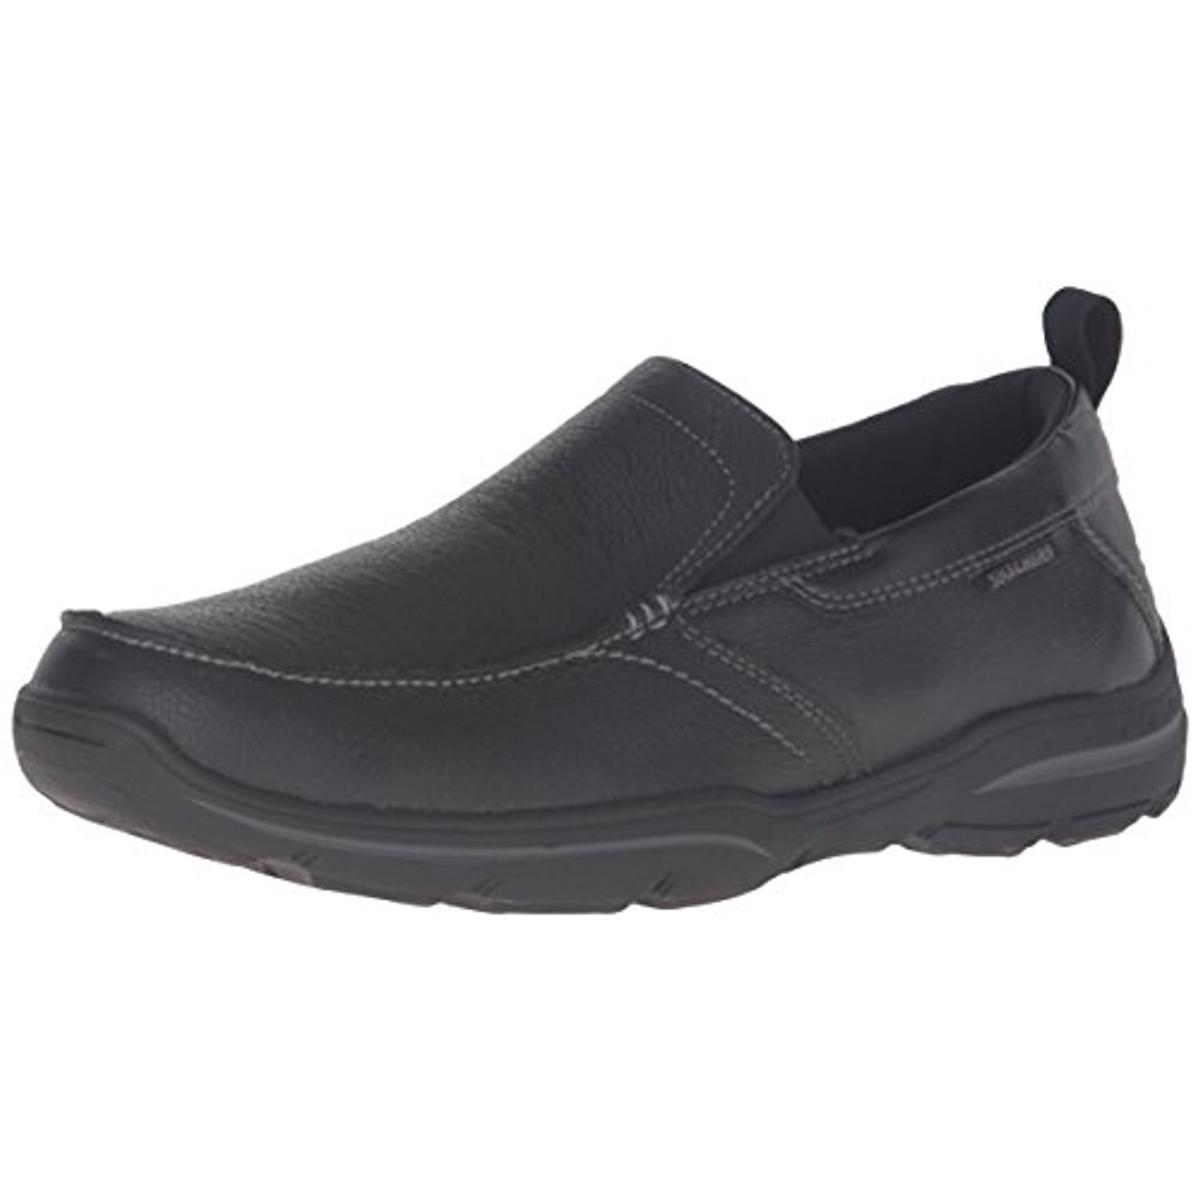 Skechers Mens Harper Forde Black Leather Loafers Shoes 7 Medium (D ...